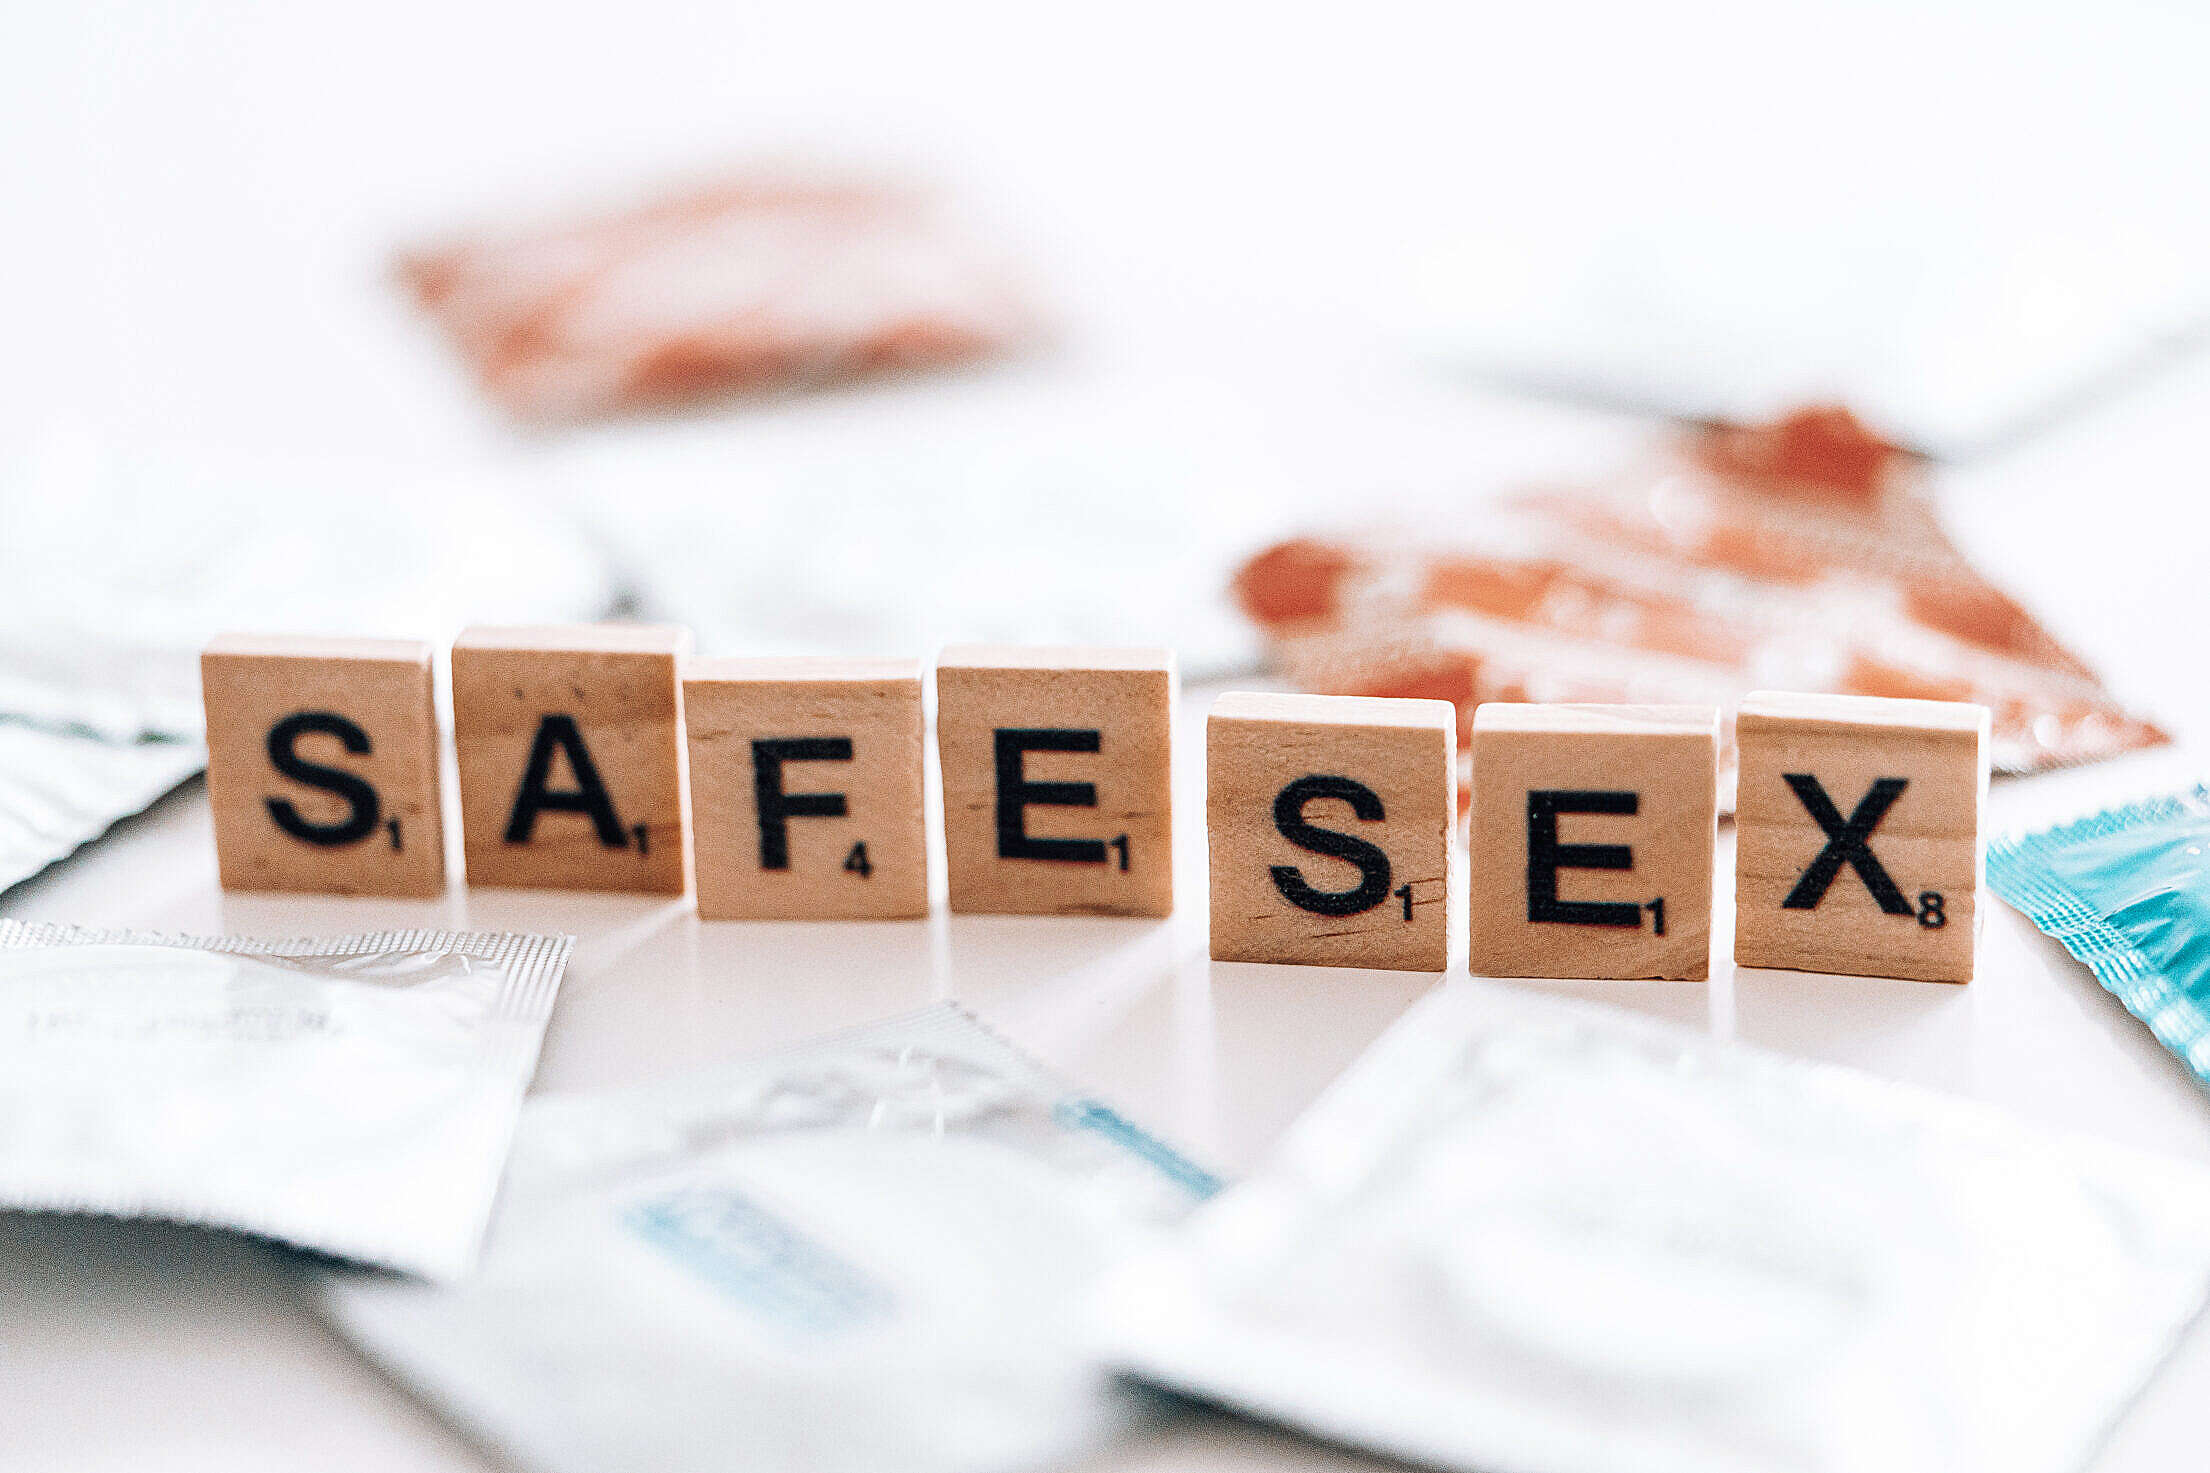 Safety First: Safer Sex Works!